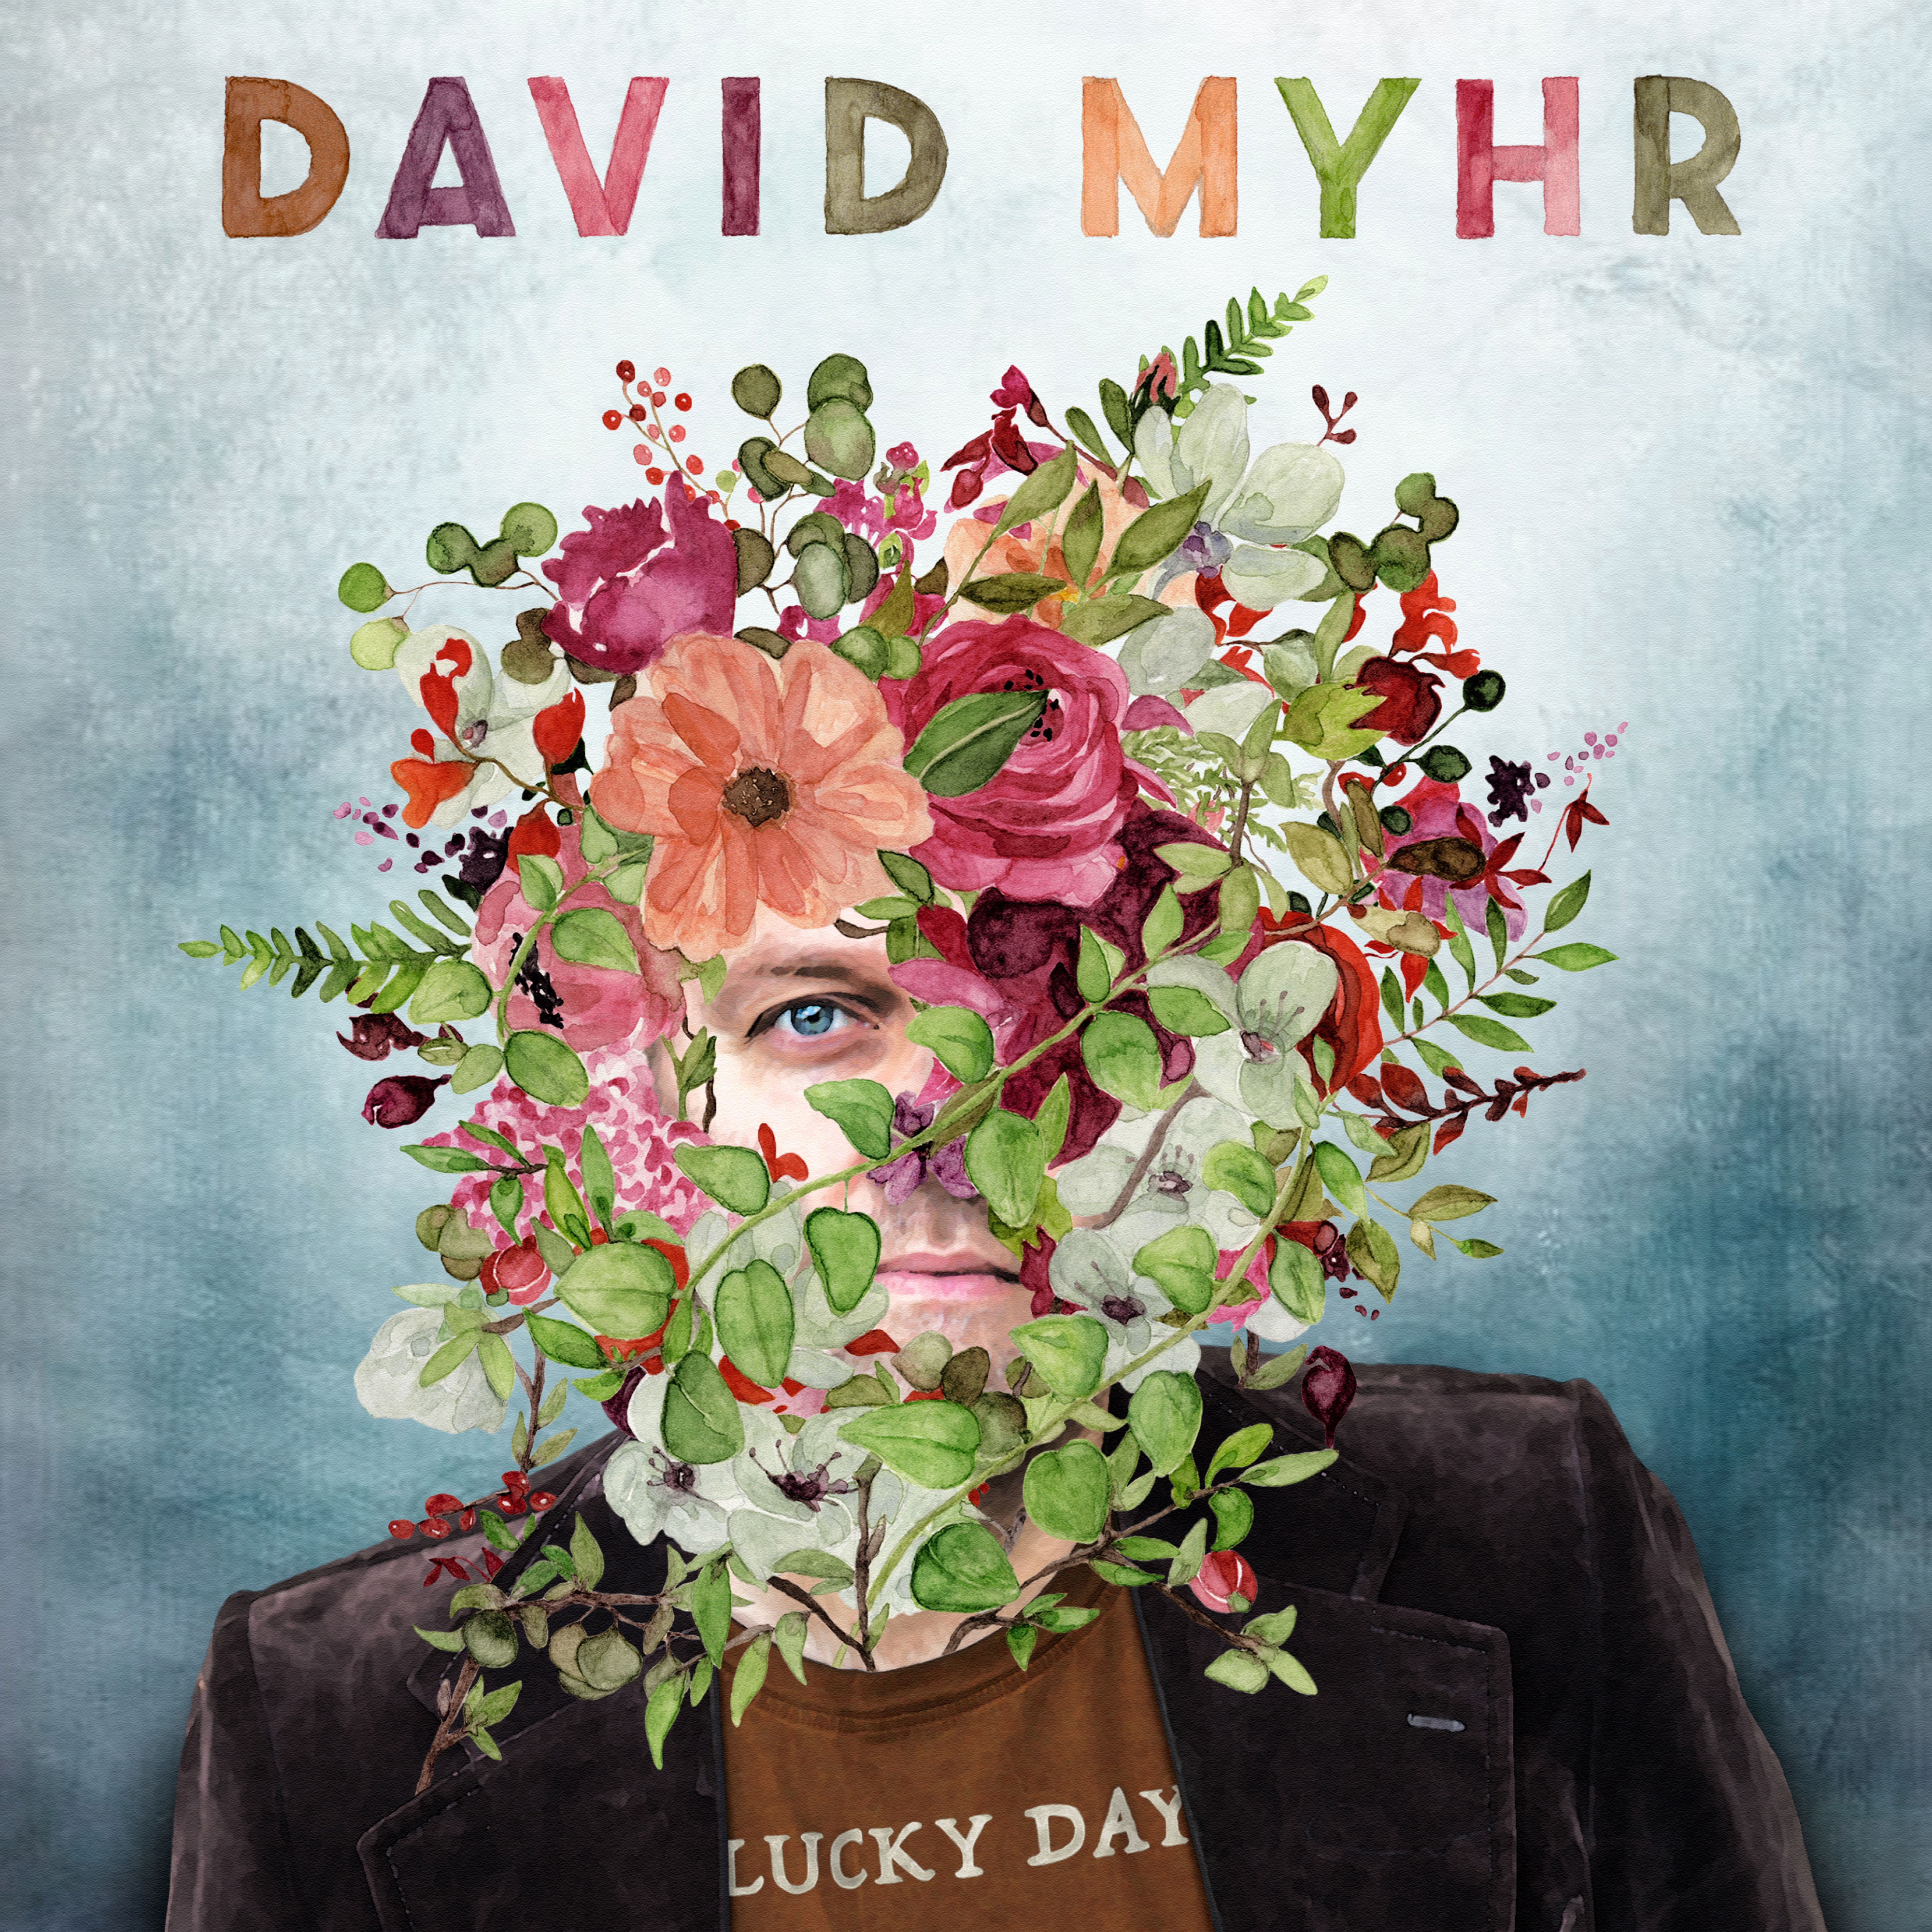 LJX115 David Myhr - Lucky Day